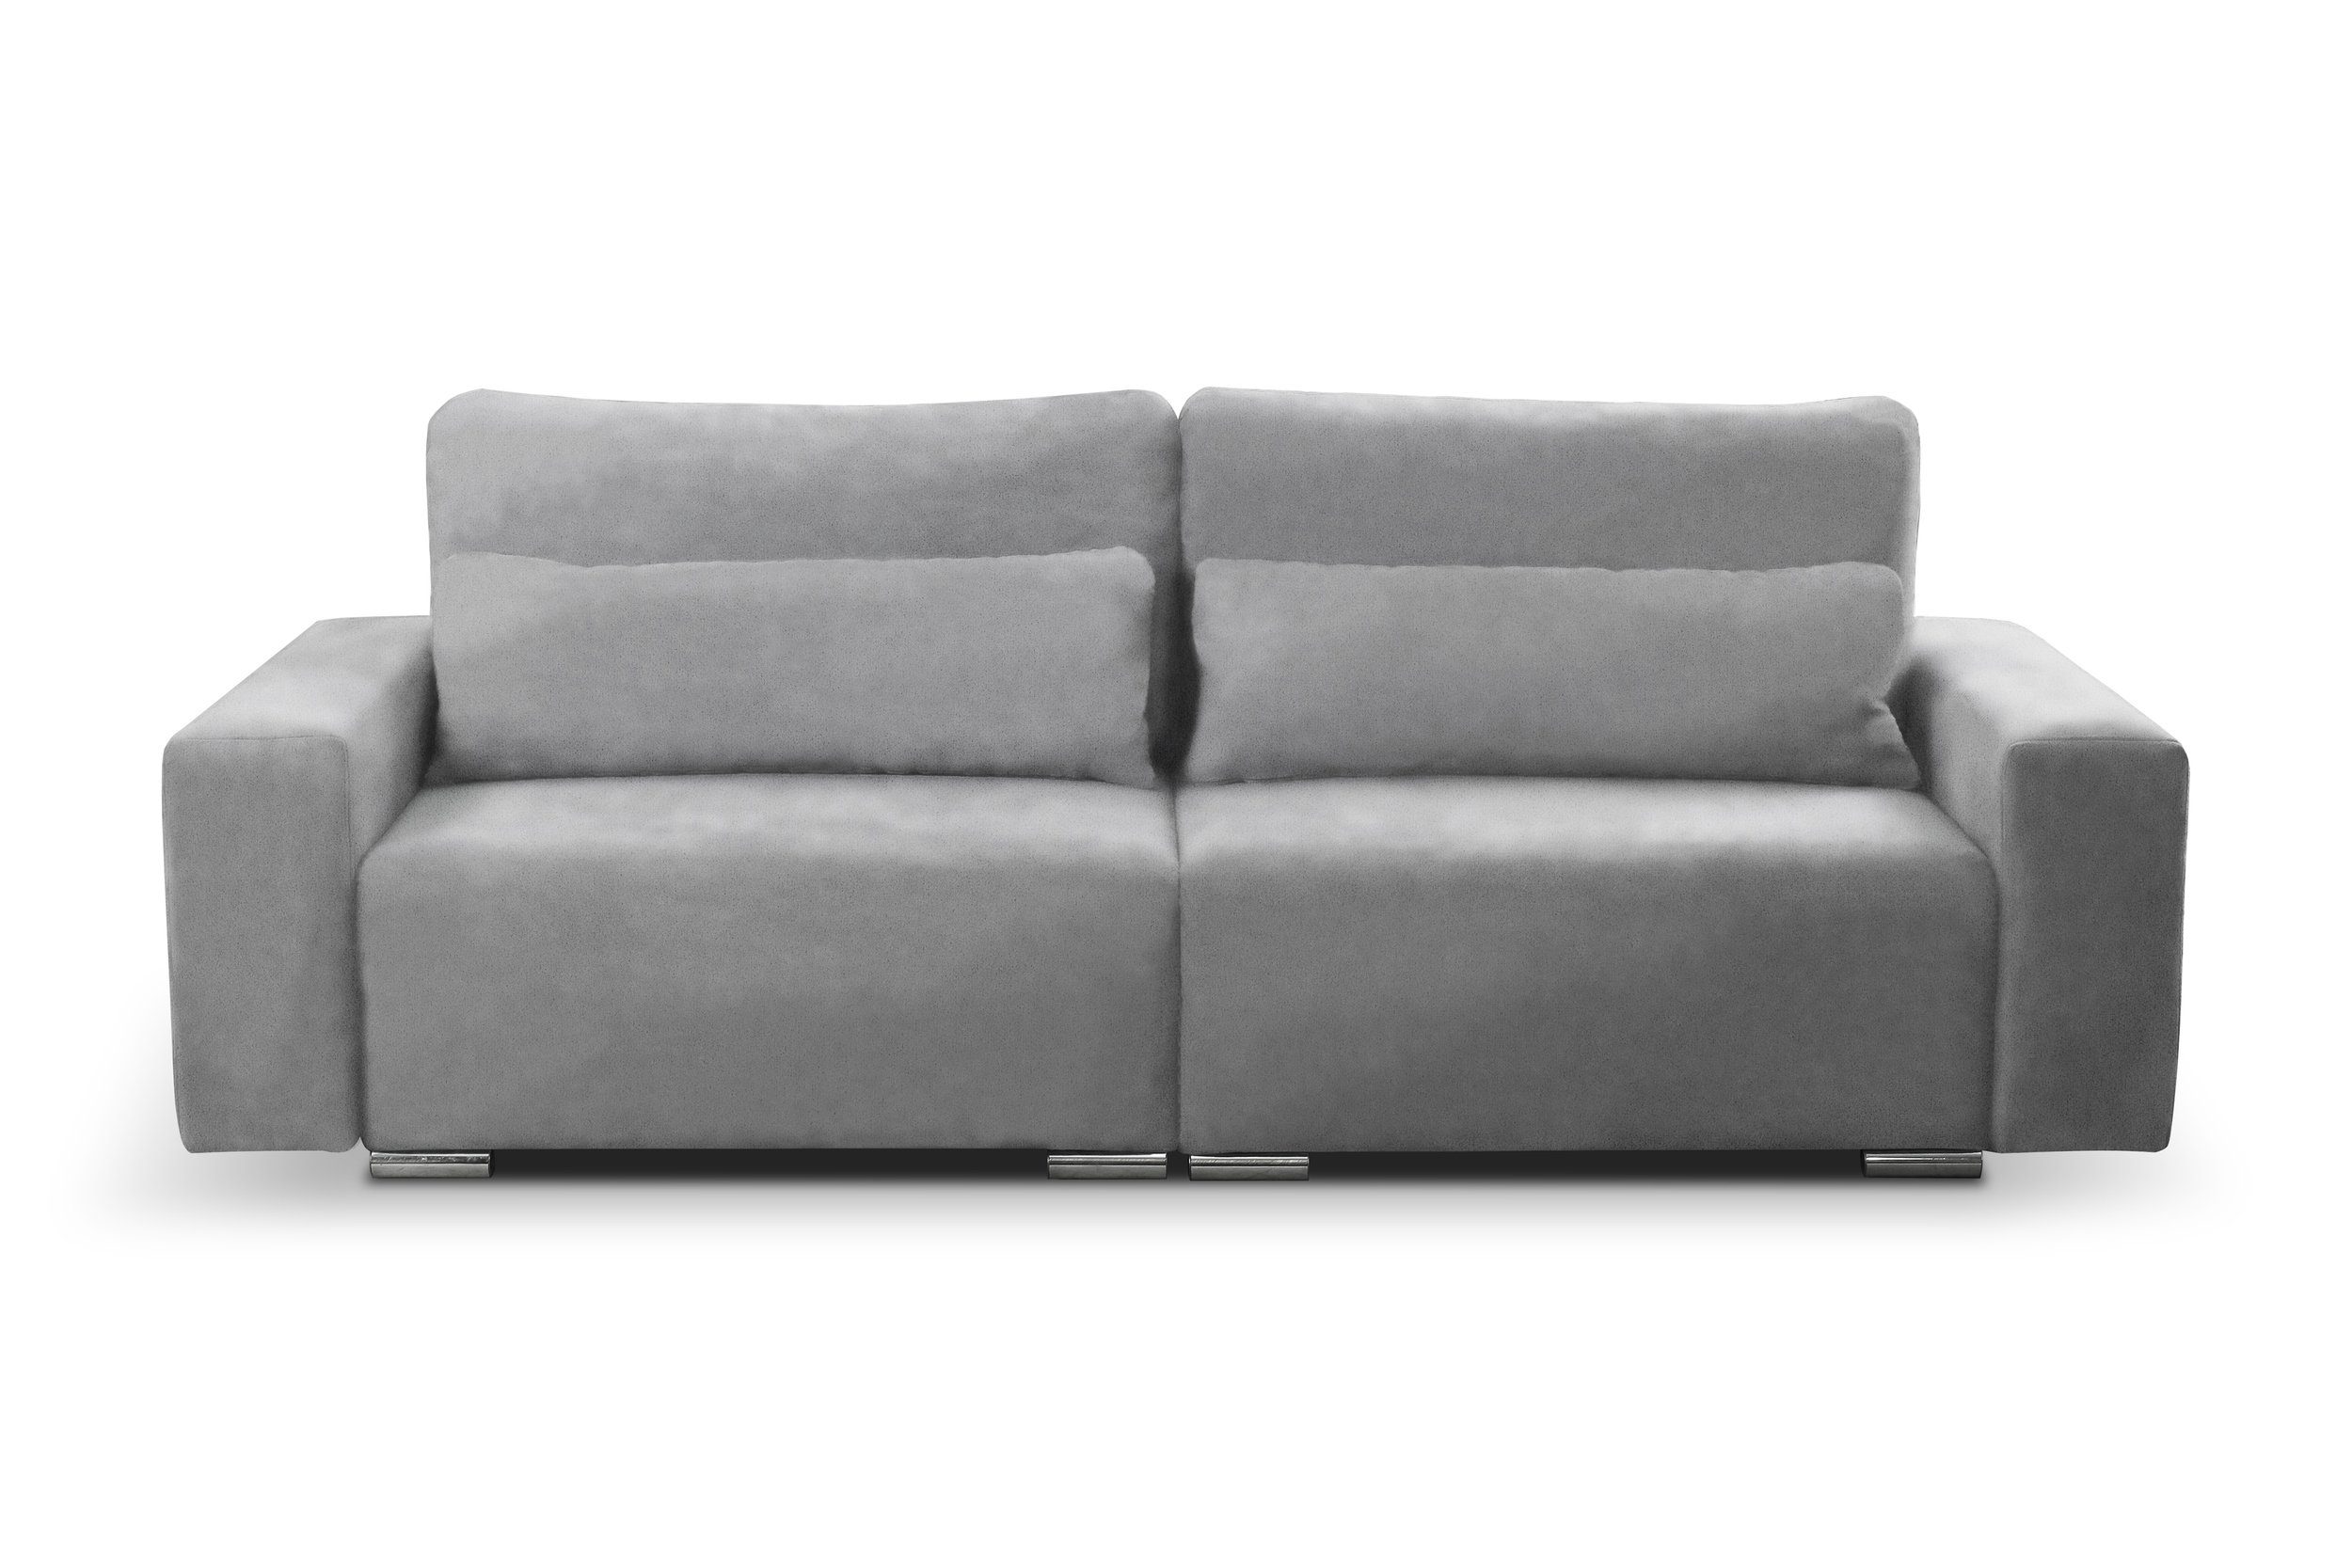 im Stylefy mit Modern Modern 3-Sitzer stellbar, Sofa, inklusive Design, 2-Sitzer, Afina, Raum Kissen, Bettfunktion, frei